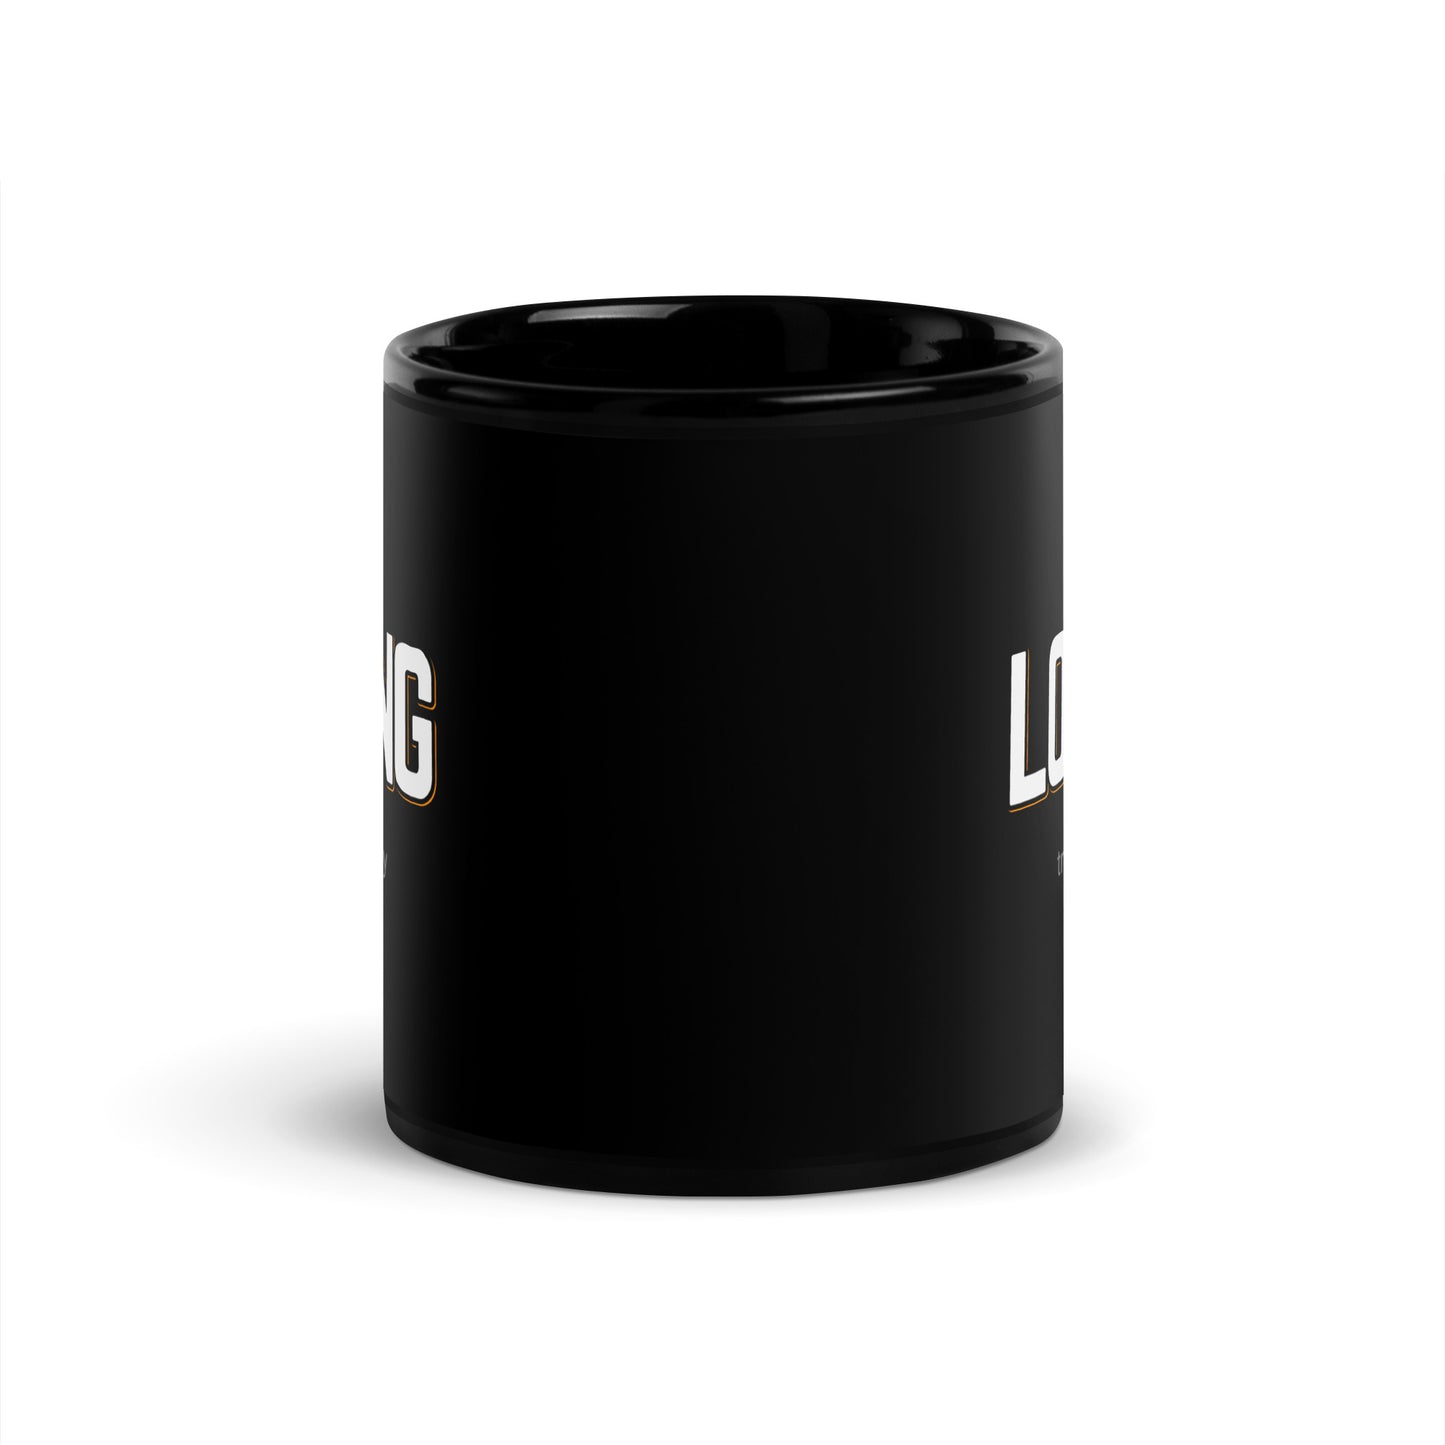 LOVING Black Coffee Mug Bold 11 oz or 15 oz